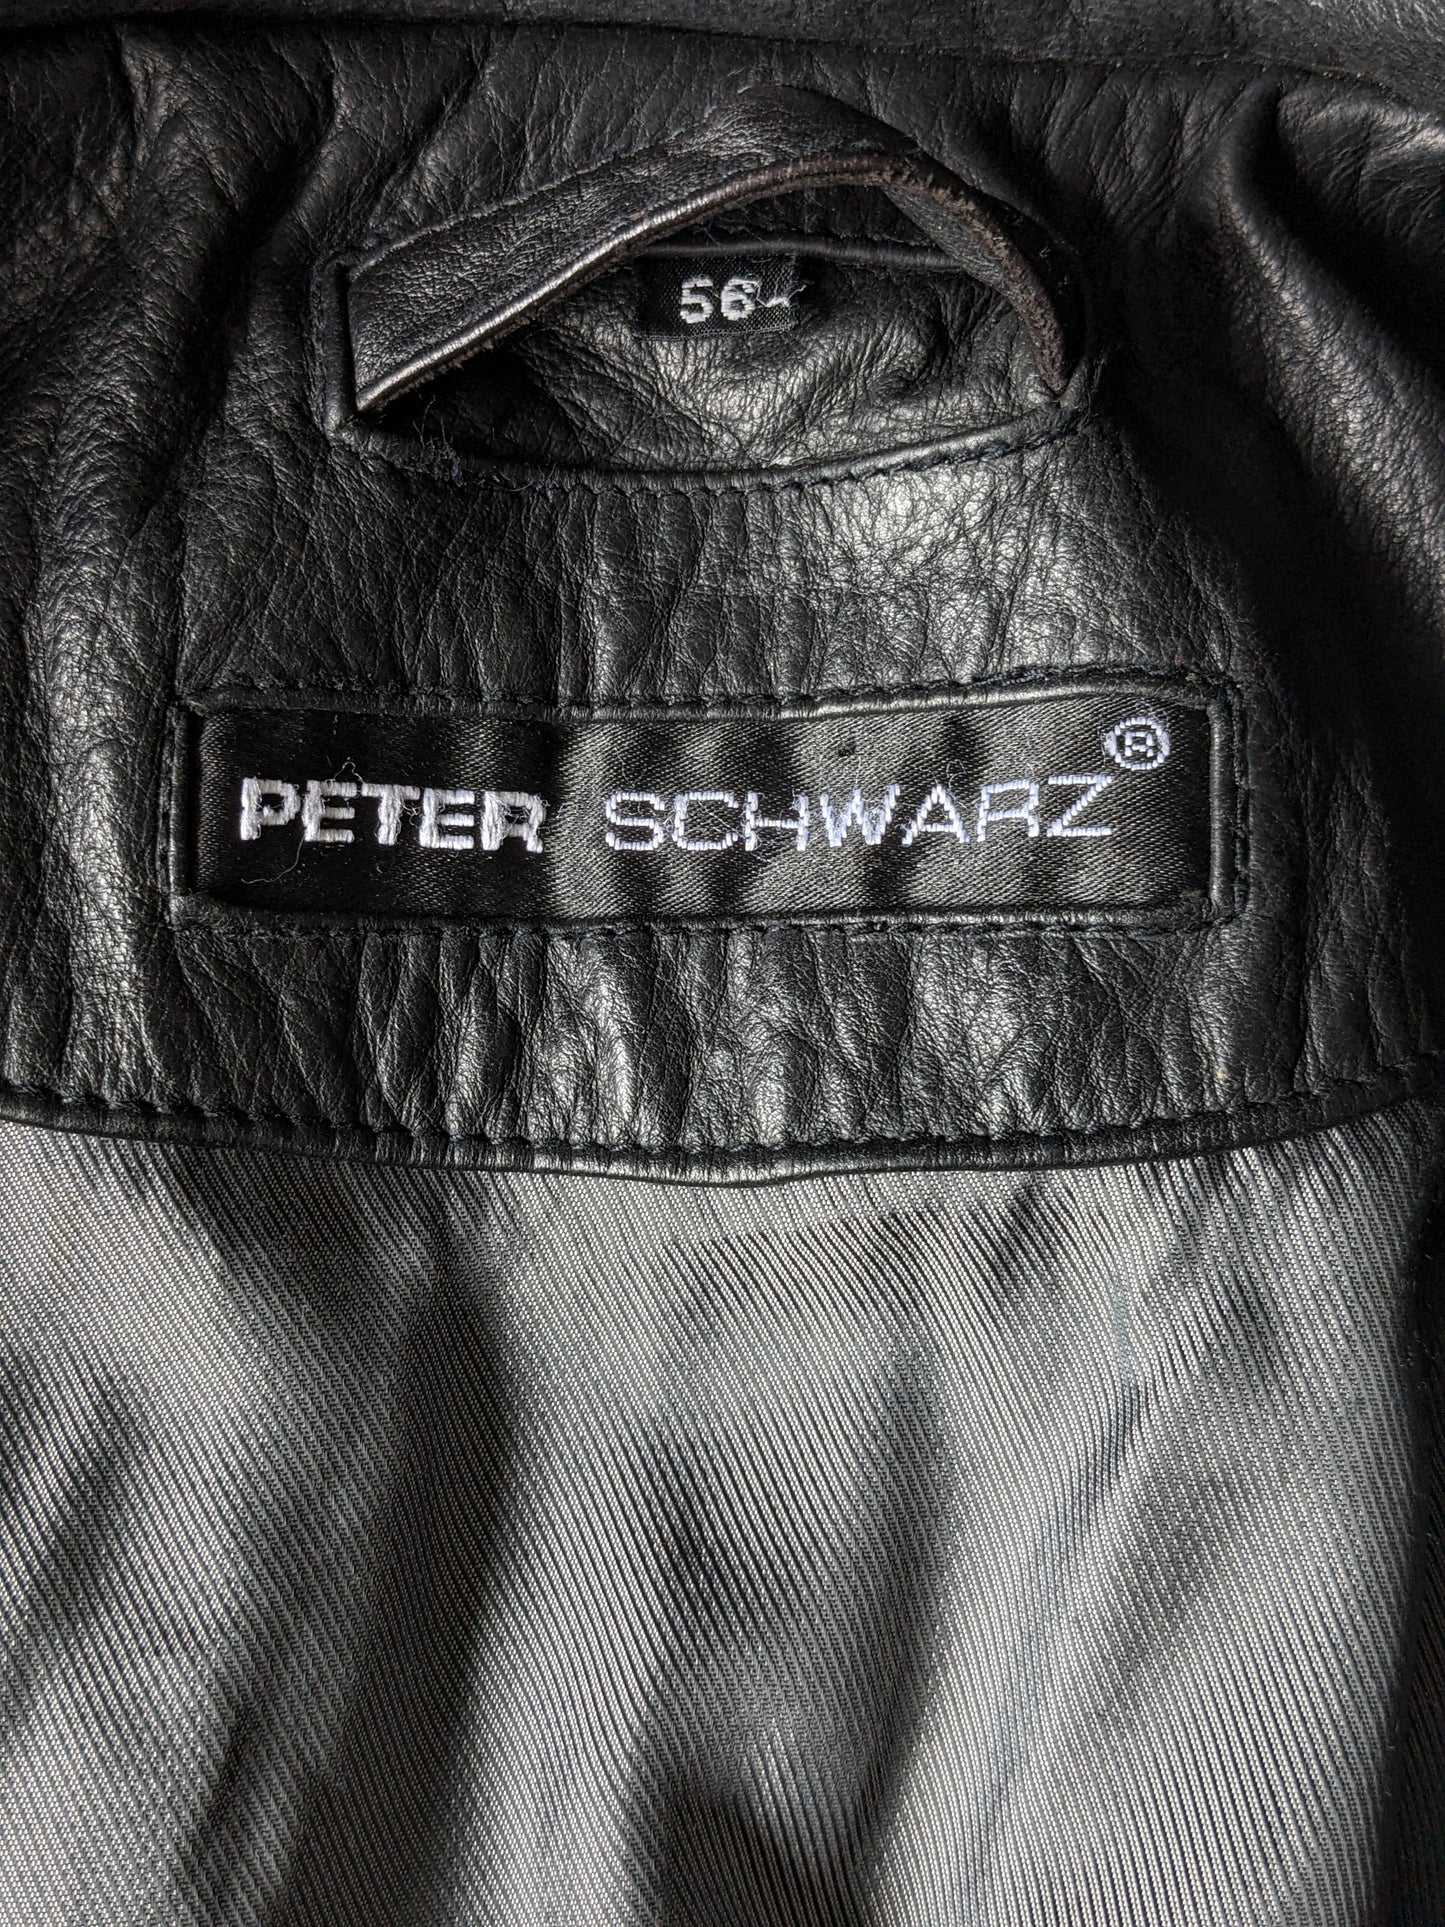 Peter Schwarz apprend le corps plus chaud. Double fermeture et 2 poches intérieures. Couleur noire. Taille 56 / XL.